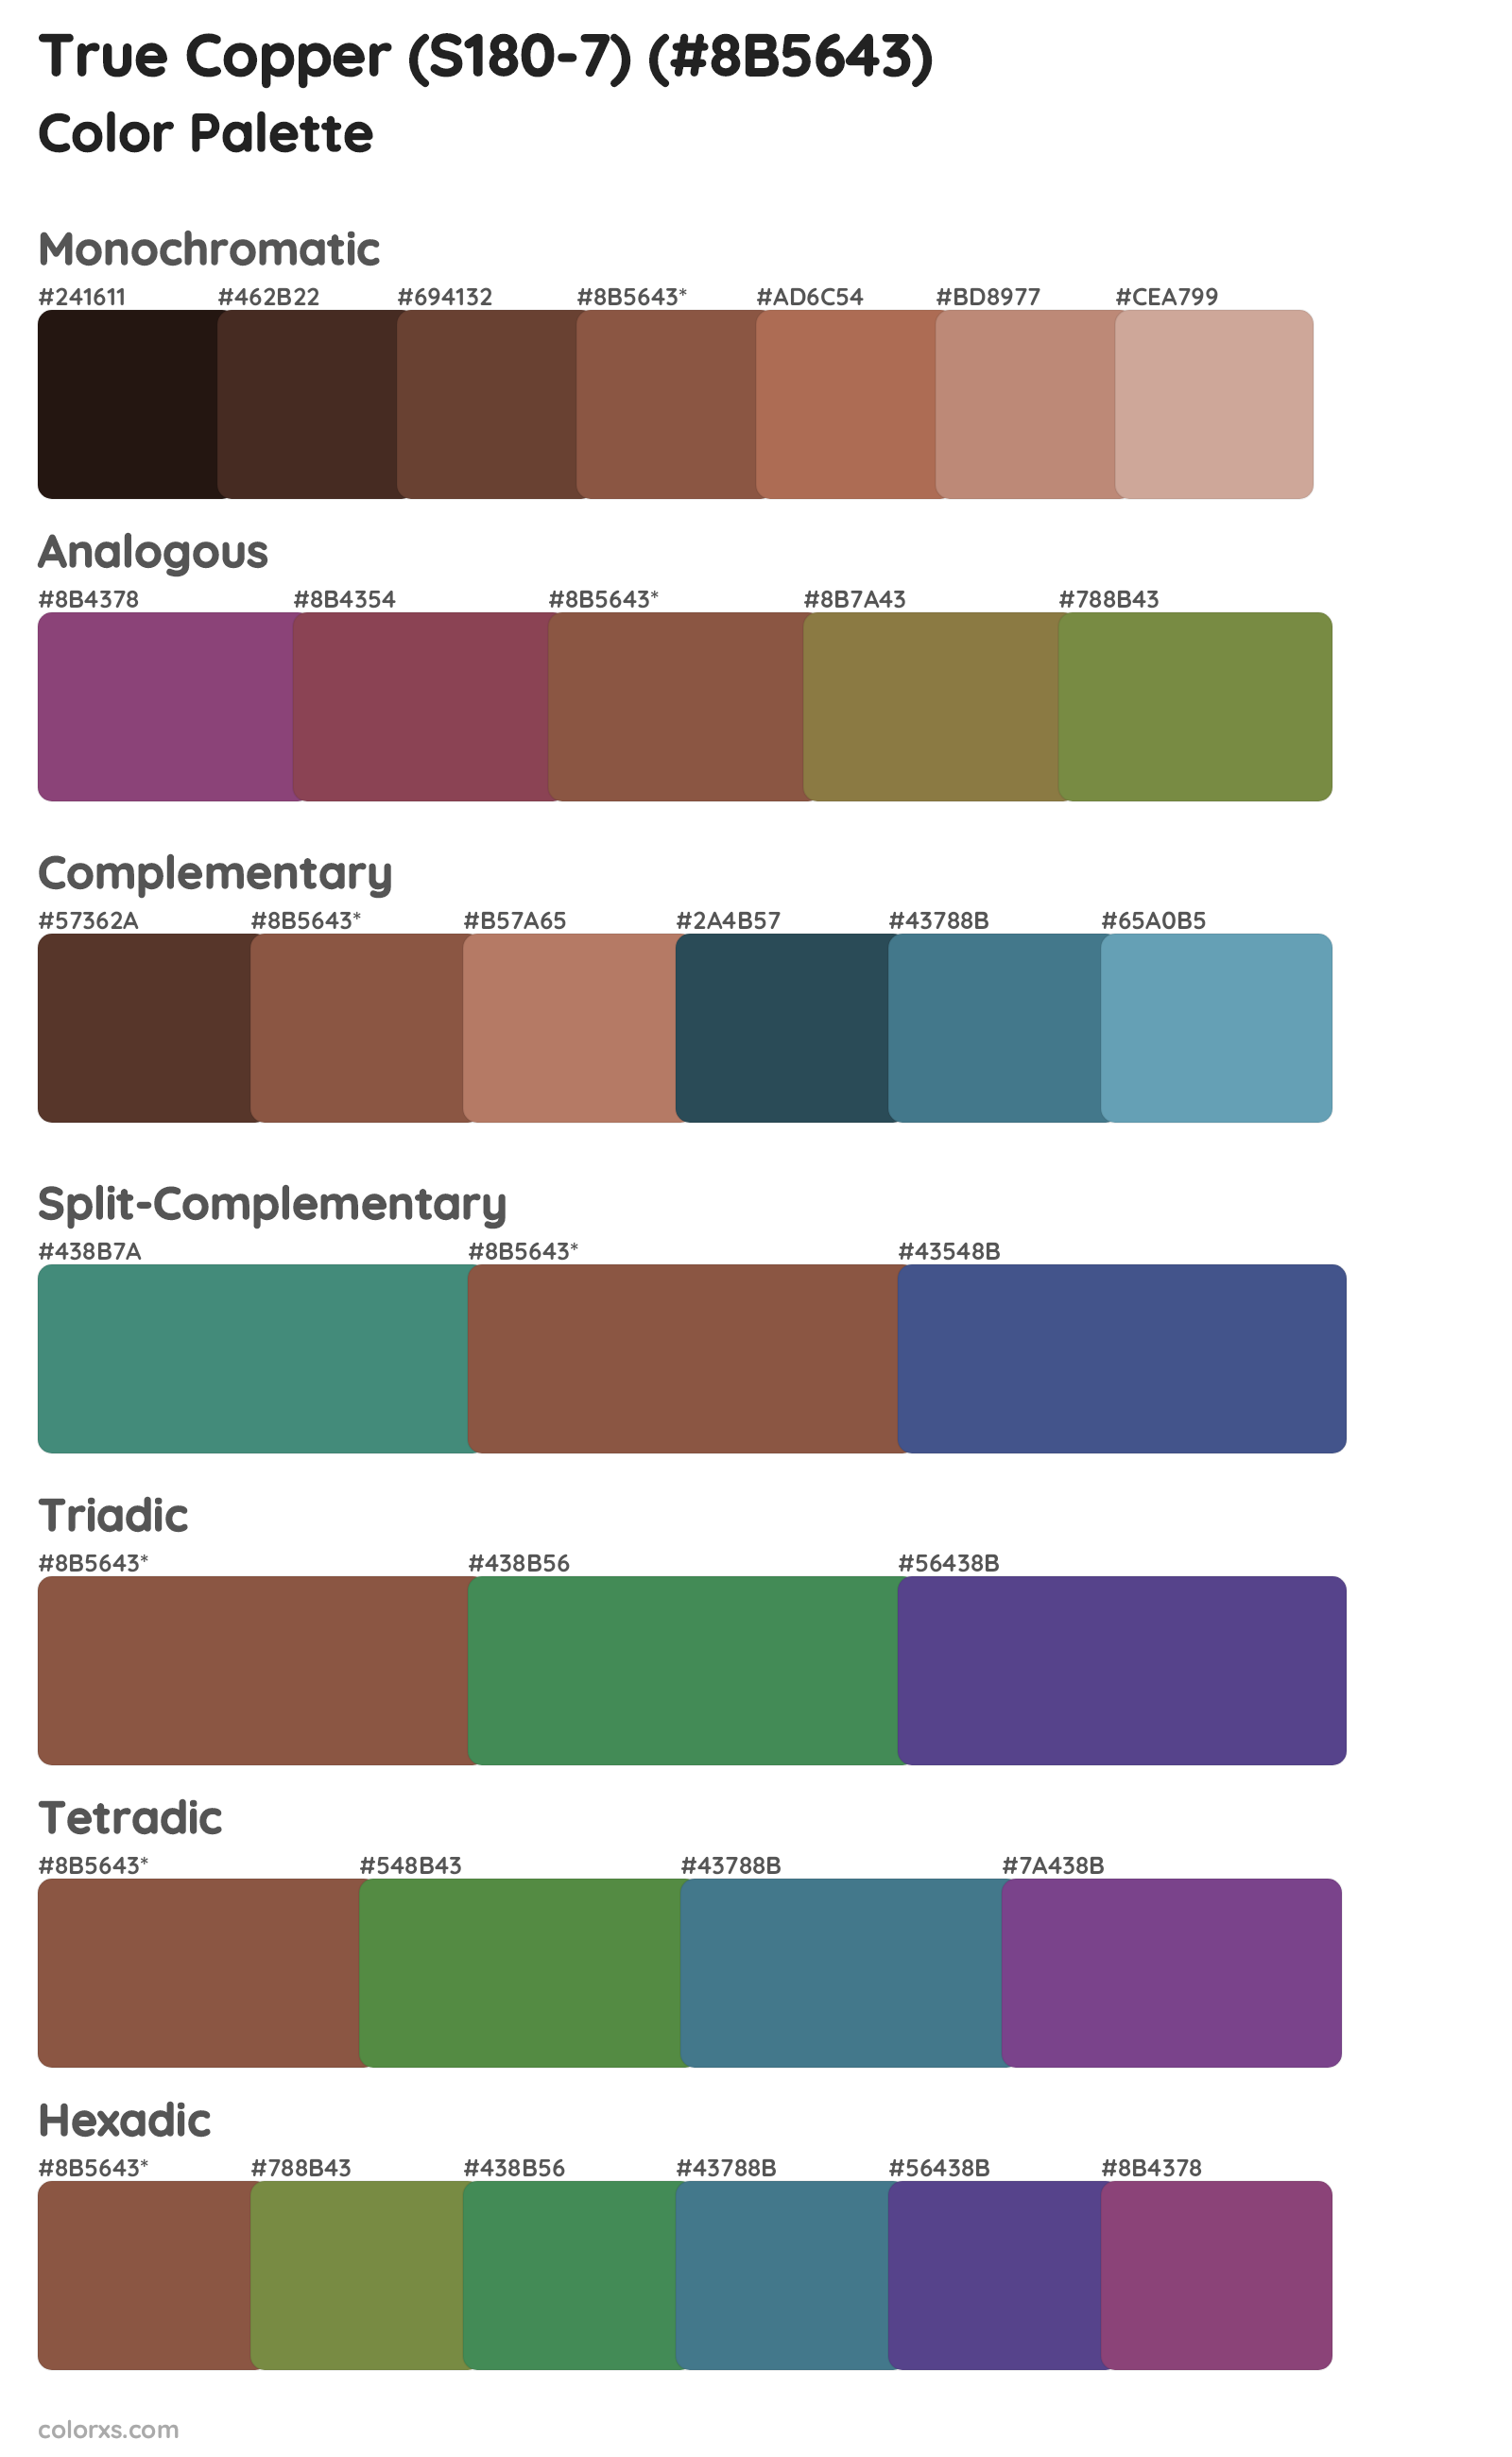 True Copper (S180-7) Color Scheme Palettes